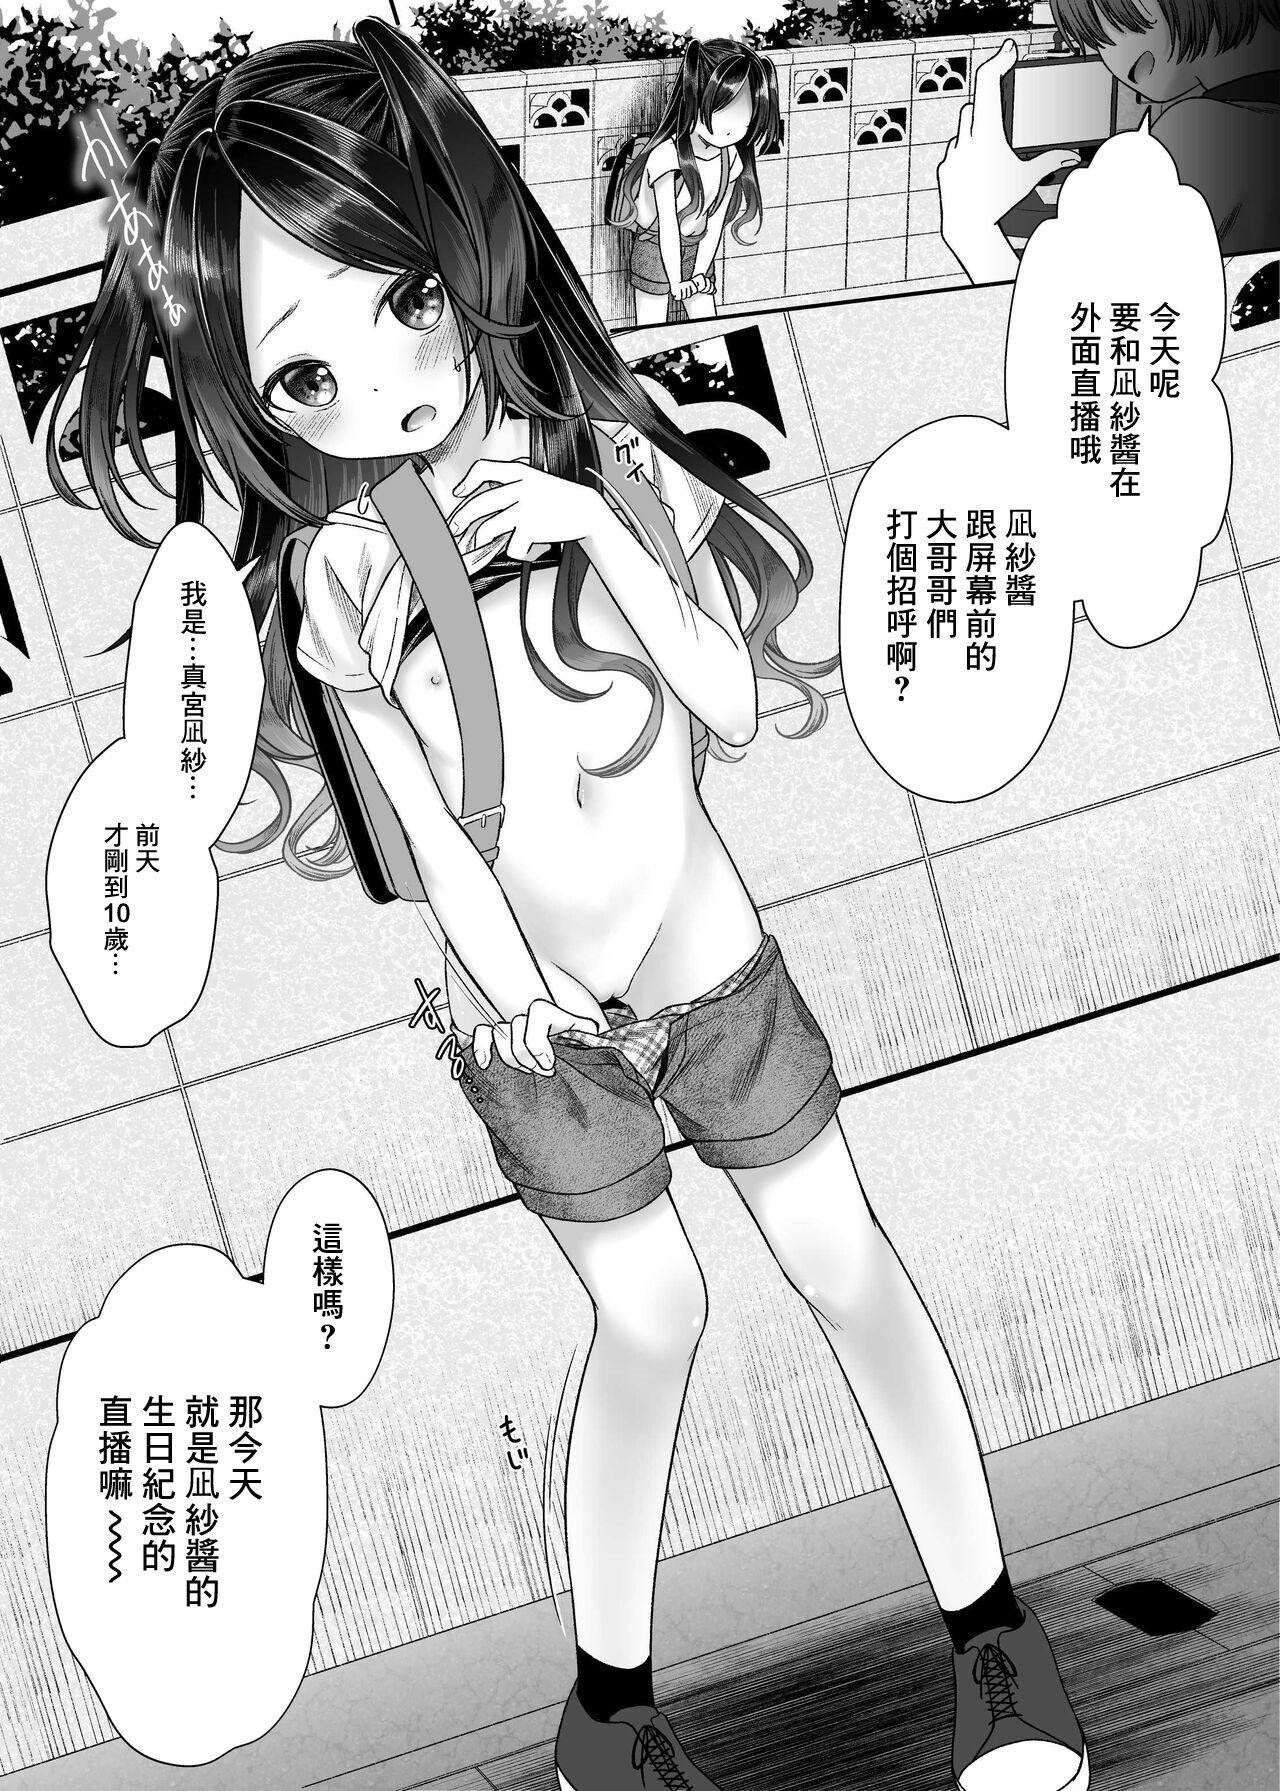 Old Vs Young JS4 NTR Haishin Manga - Original Body Massage - Page 2